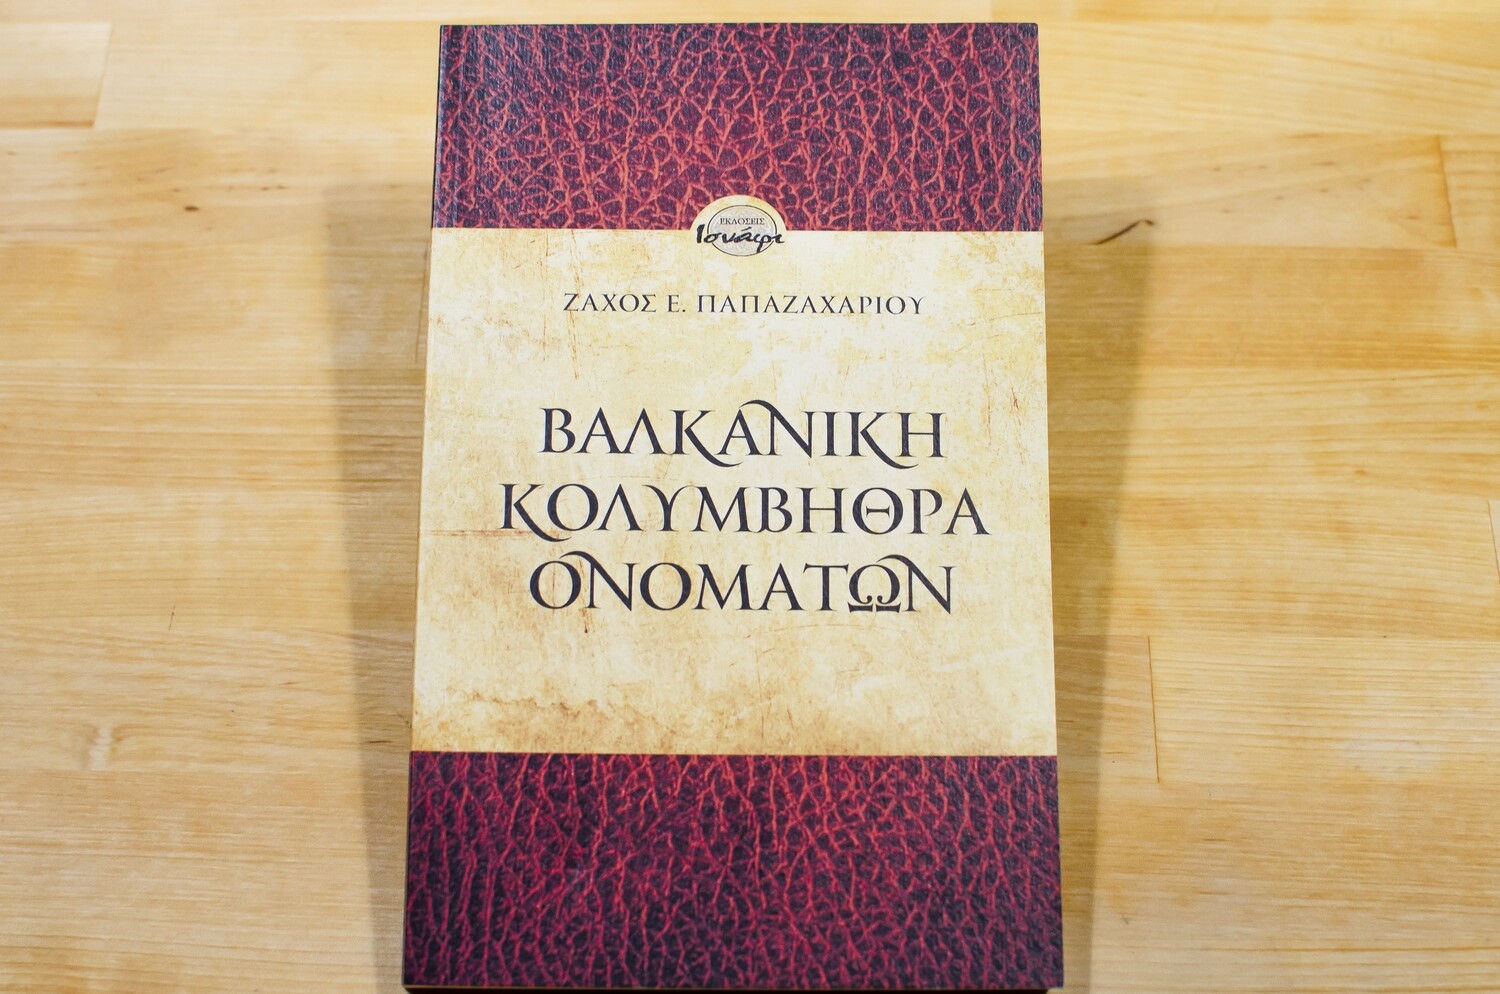 Βαλκανική κολυμβήθρα ονομάτων, Ζάχος Ε. Παπαζαχαρίου, Εκδόσεις Ισνάφι, 2010